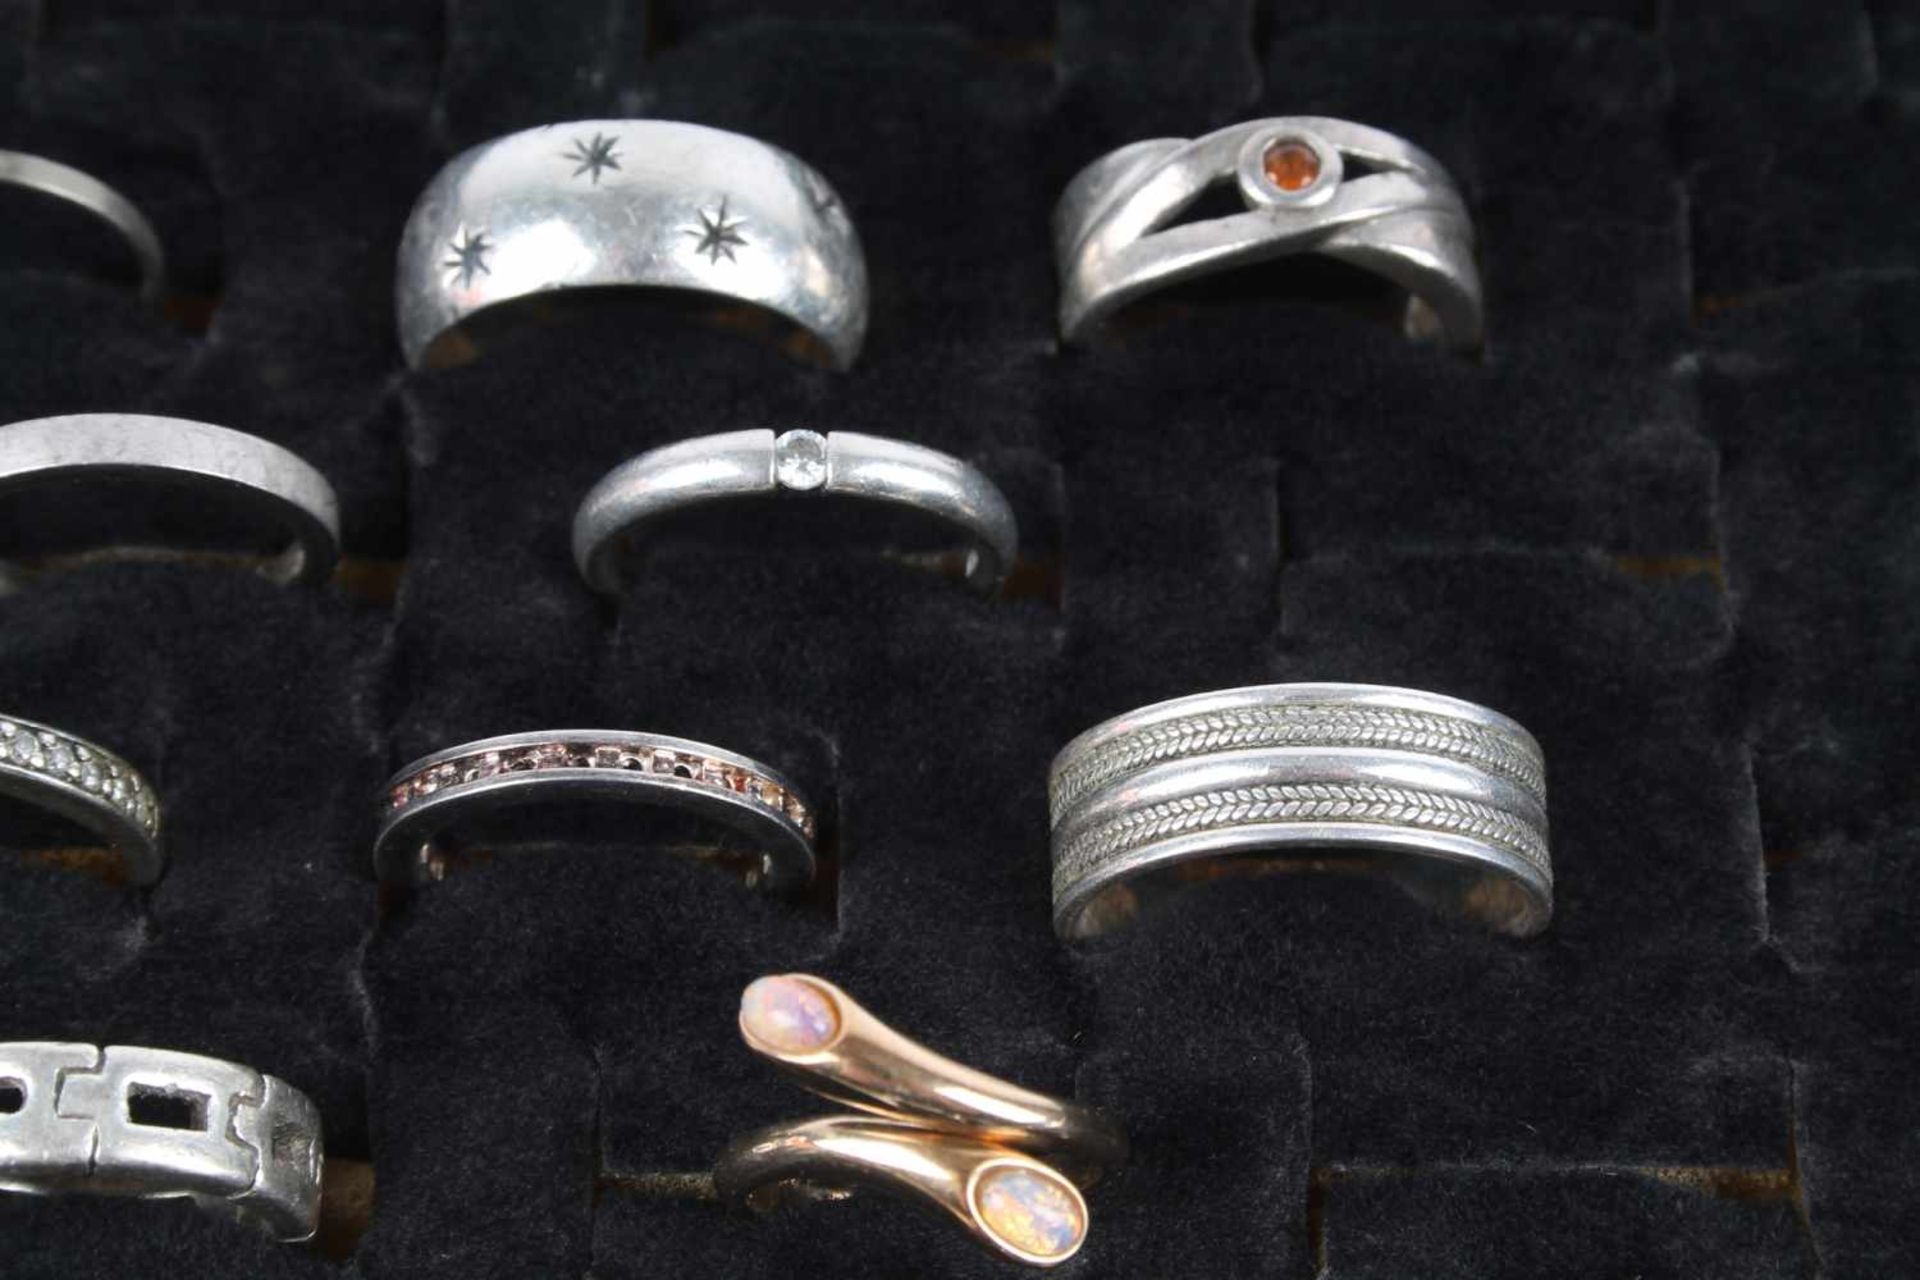 22 Silberringe, silver rings, - Bild 4 aus 5